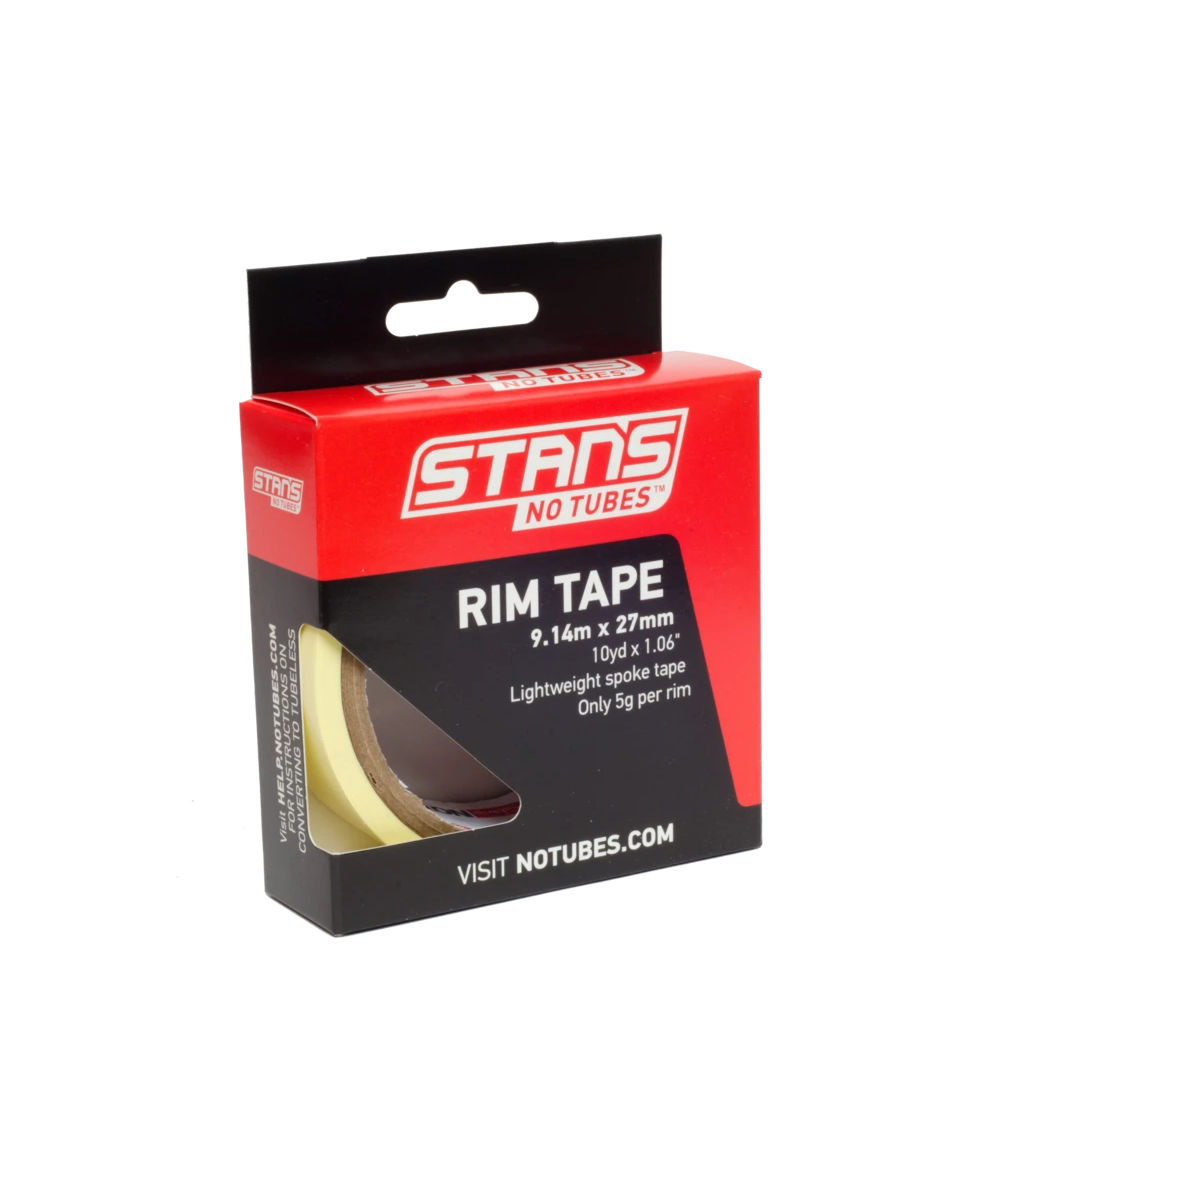 STAN'S NOTUBES Rim Tape